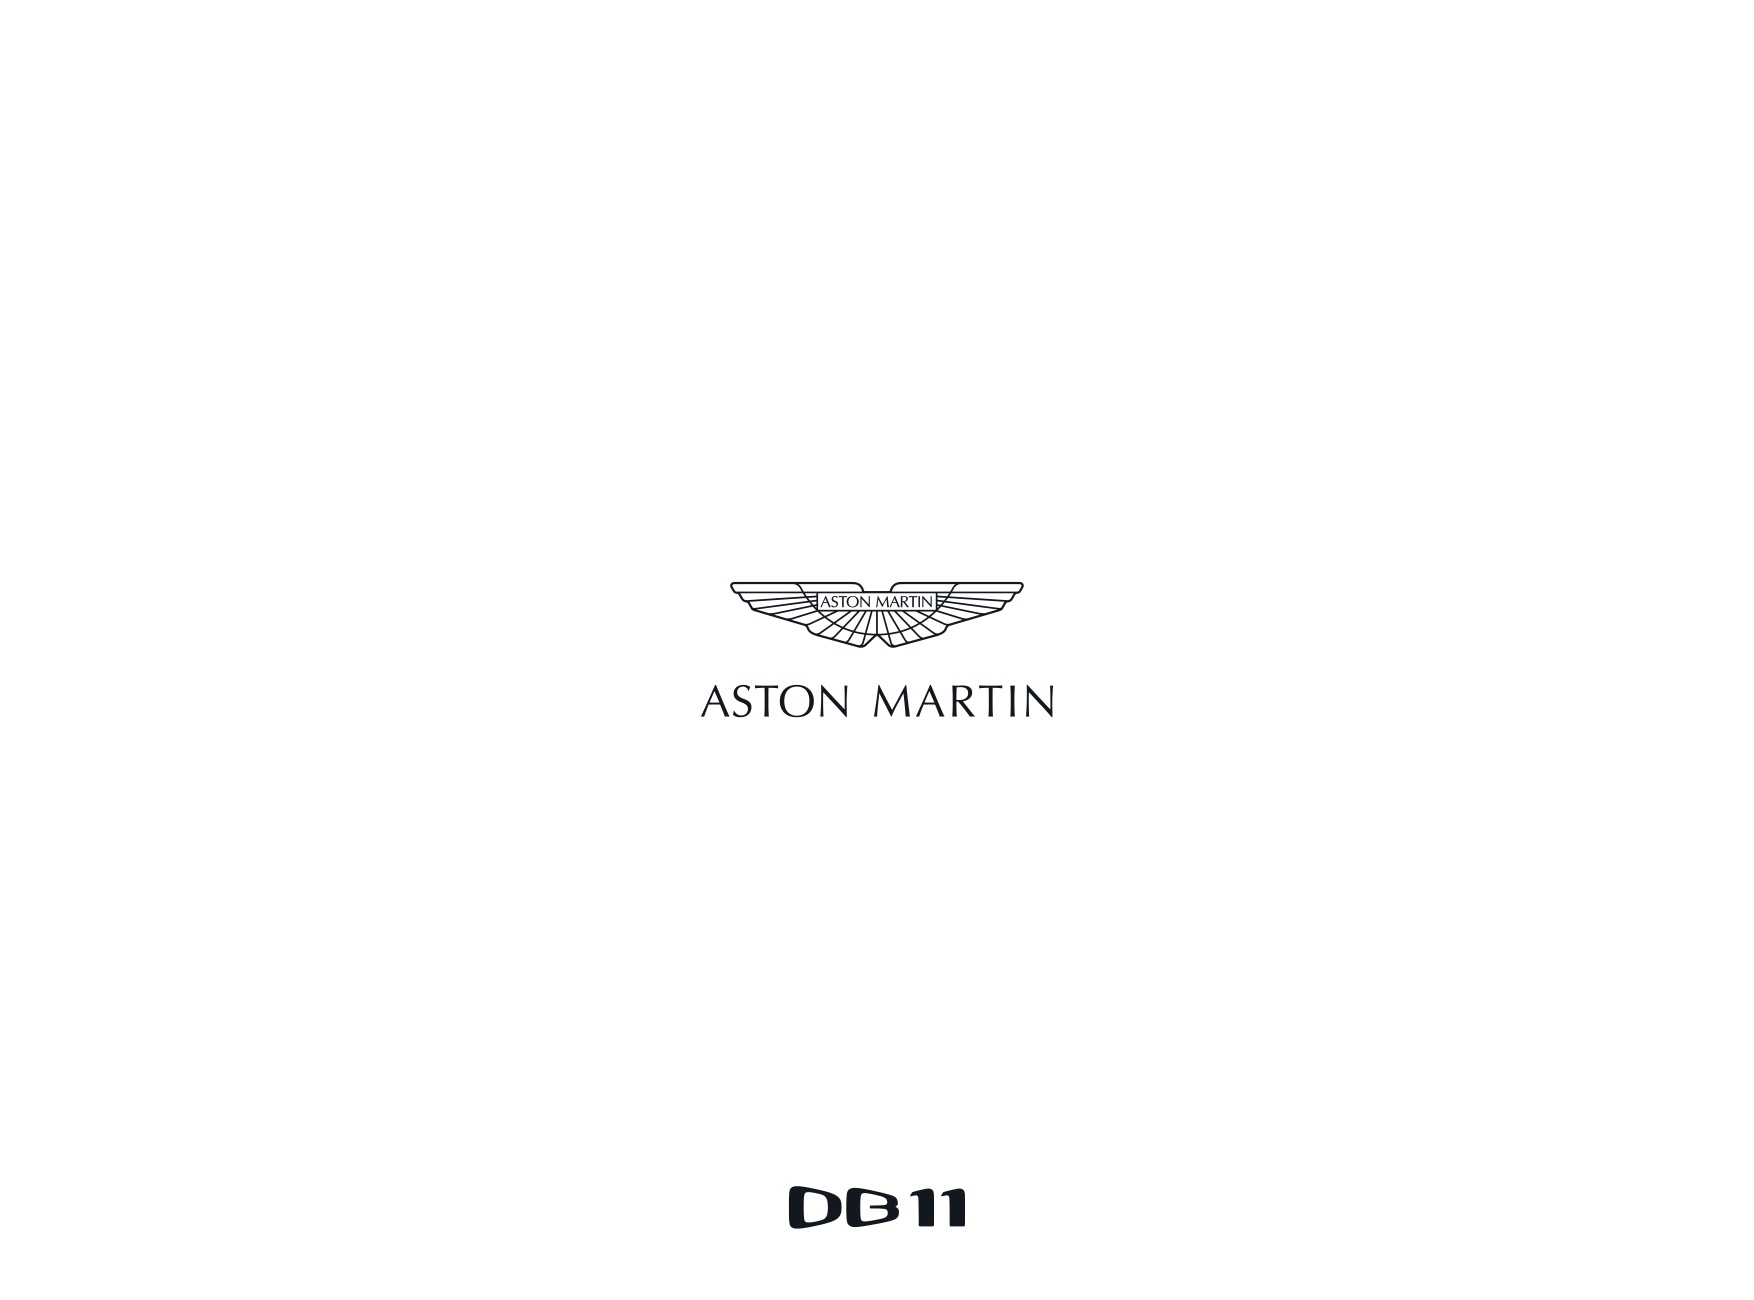 2017 Aston Martin DB11 Brochure